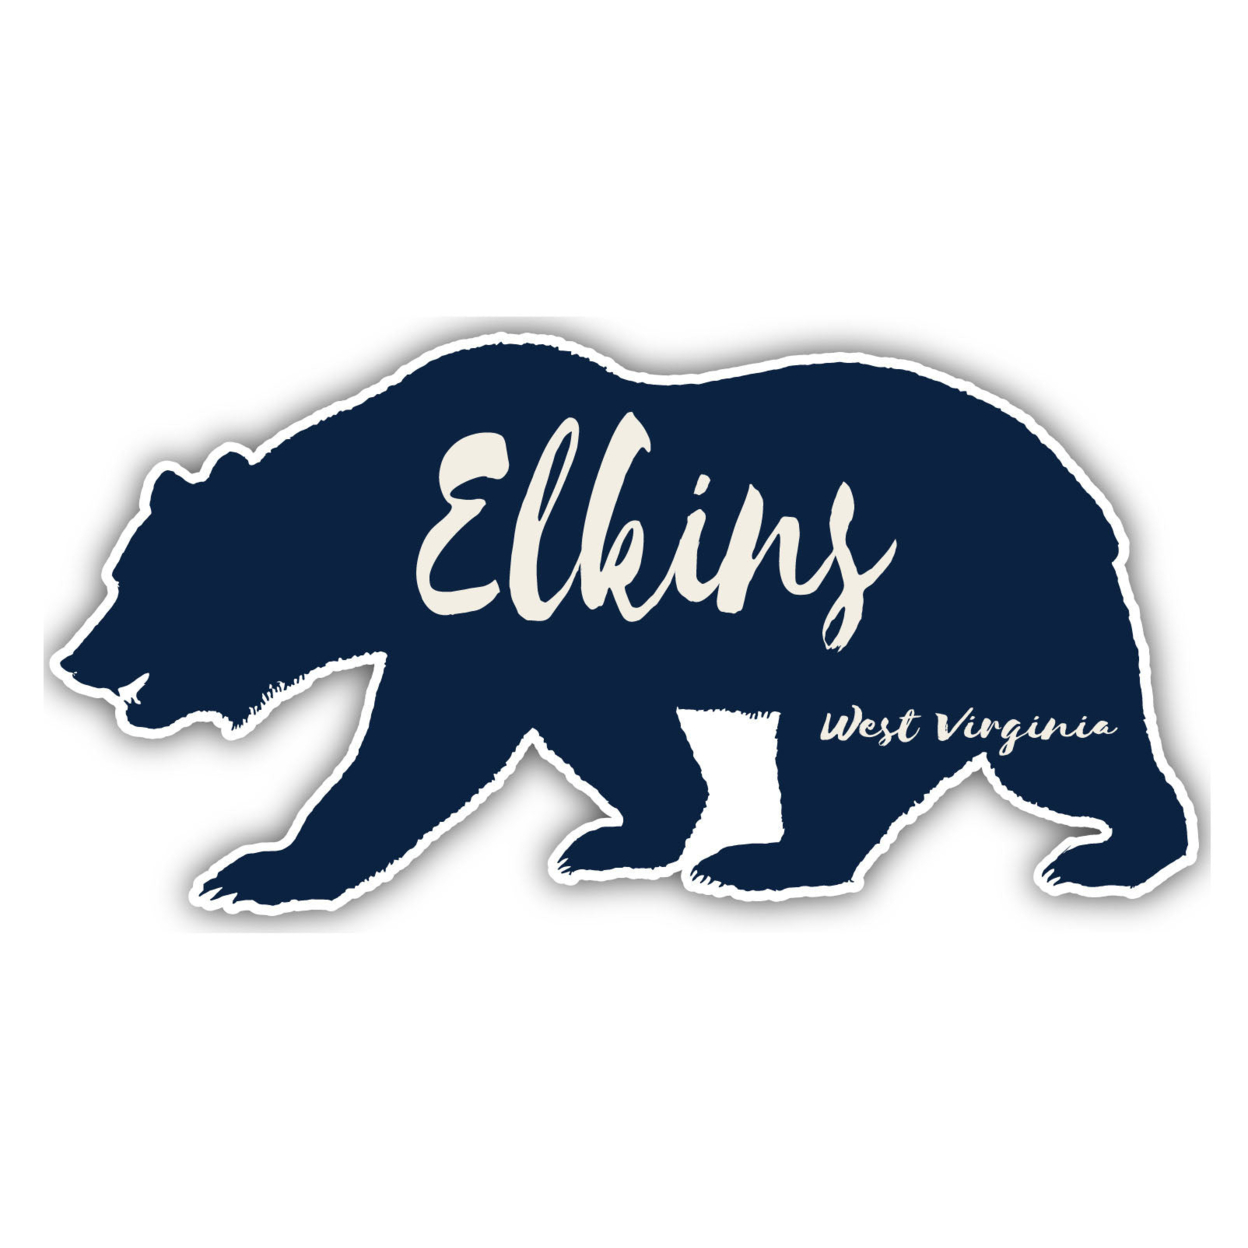 Elkins West Virginia Souvenir Decorative Stickers (Choose Theme And Size) - Single Unit, 6-Inch, Tent